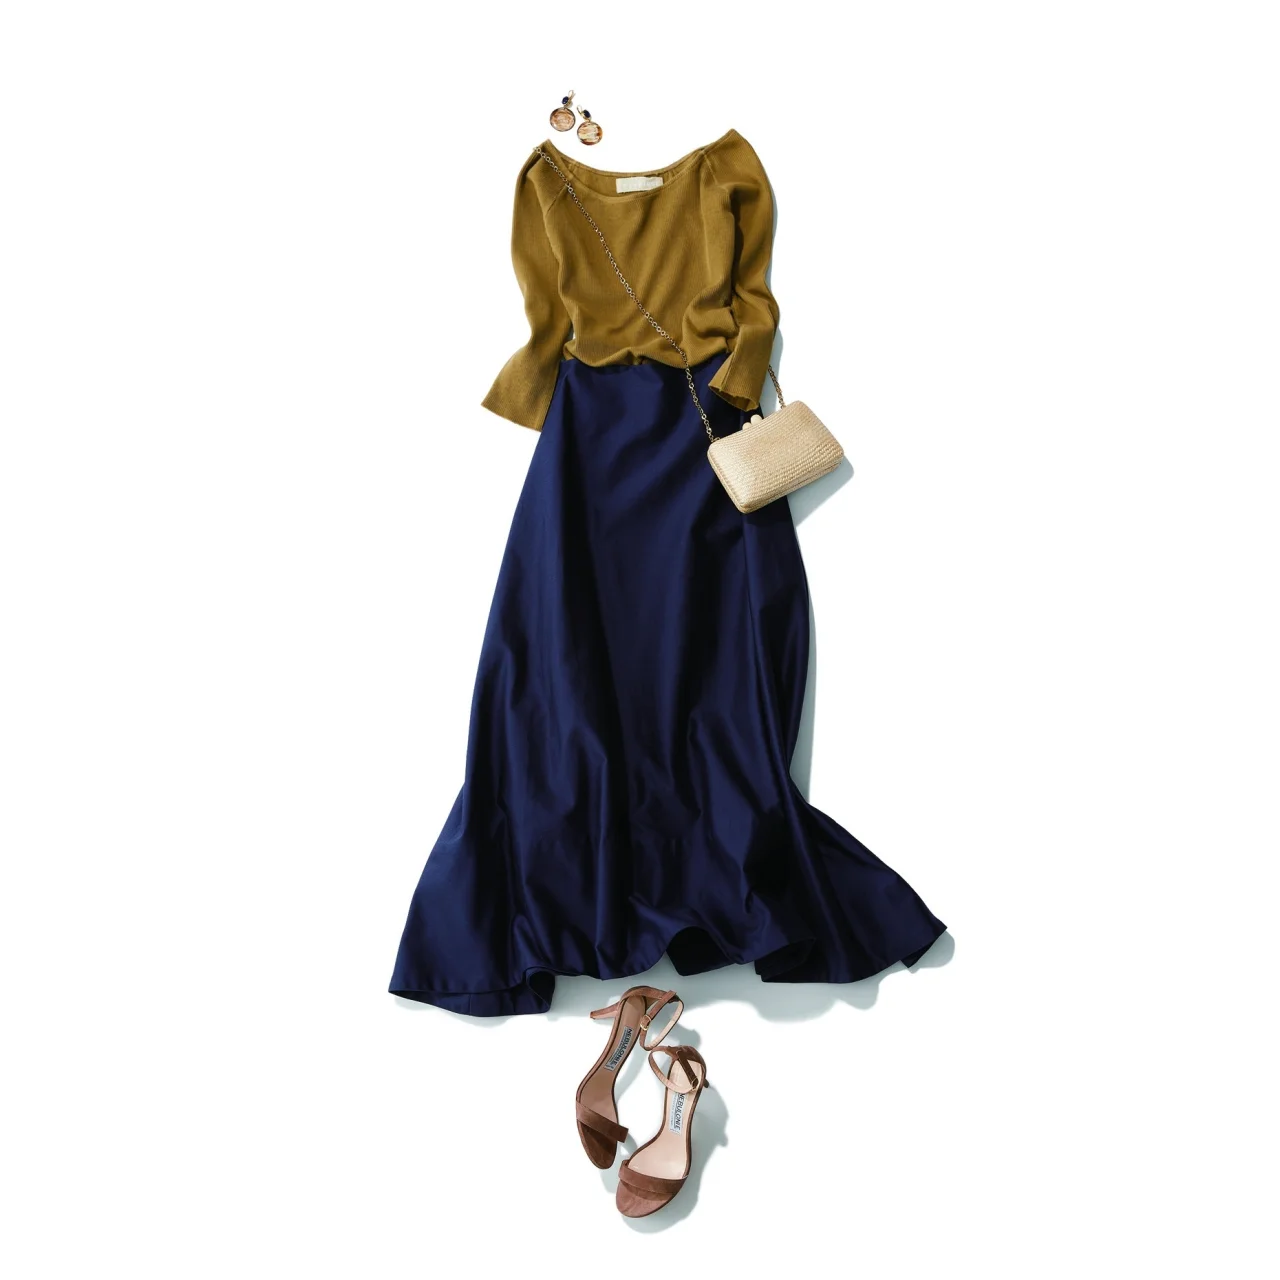 ネイビースカート×オリーブ色のリブカットソーのファッションコーデ